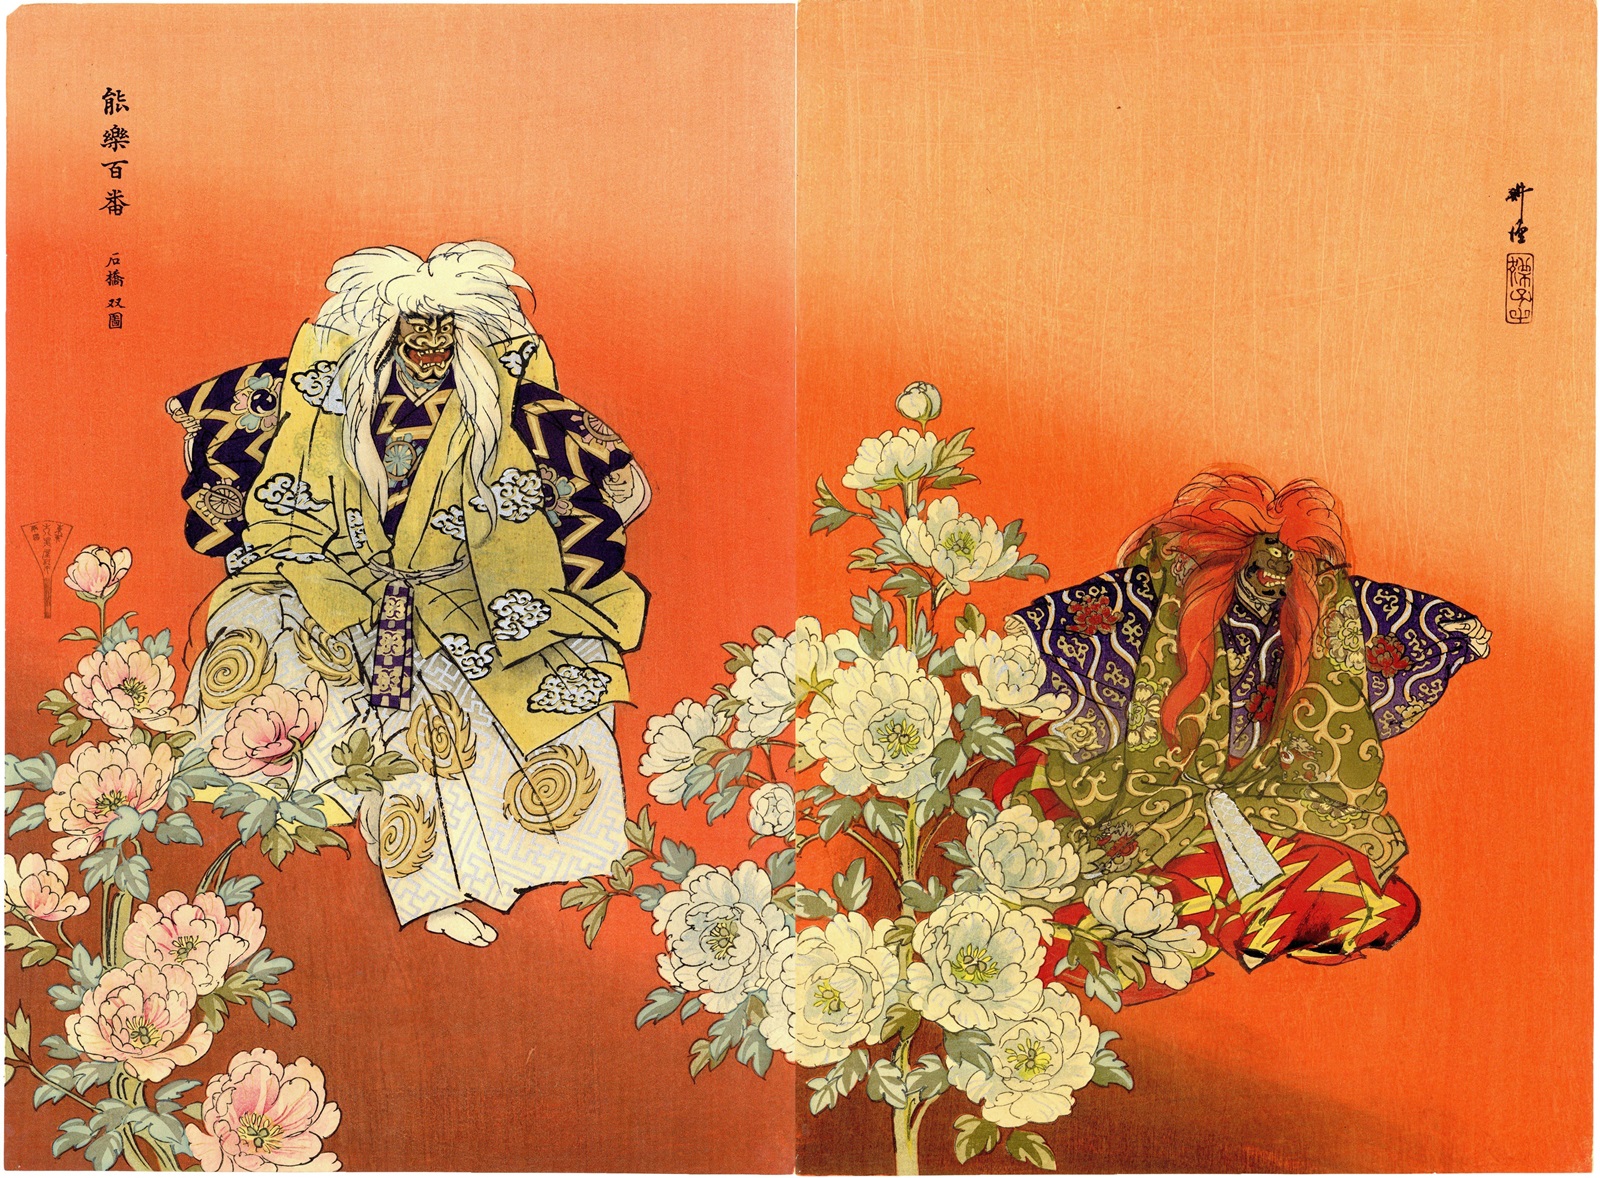 Original woodblock print – Tsukioka Kogyo (1869-1927) – 'Nōgaku